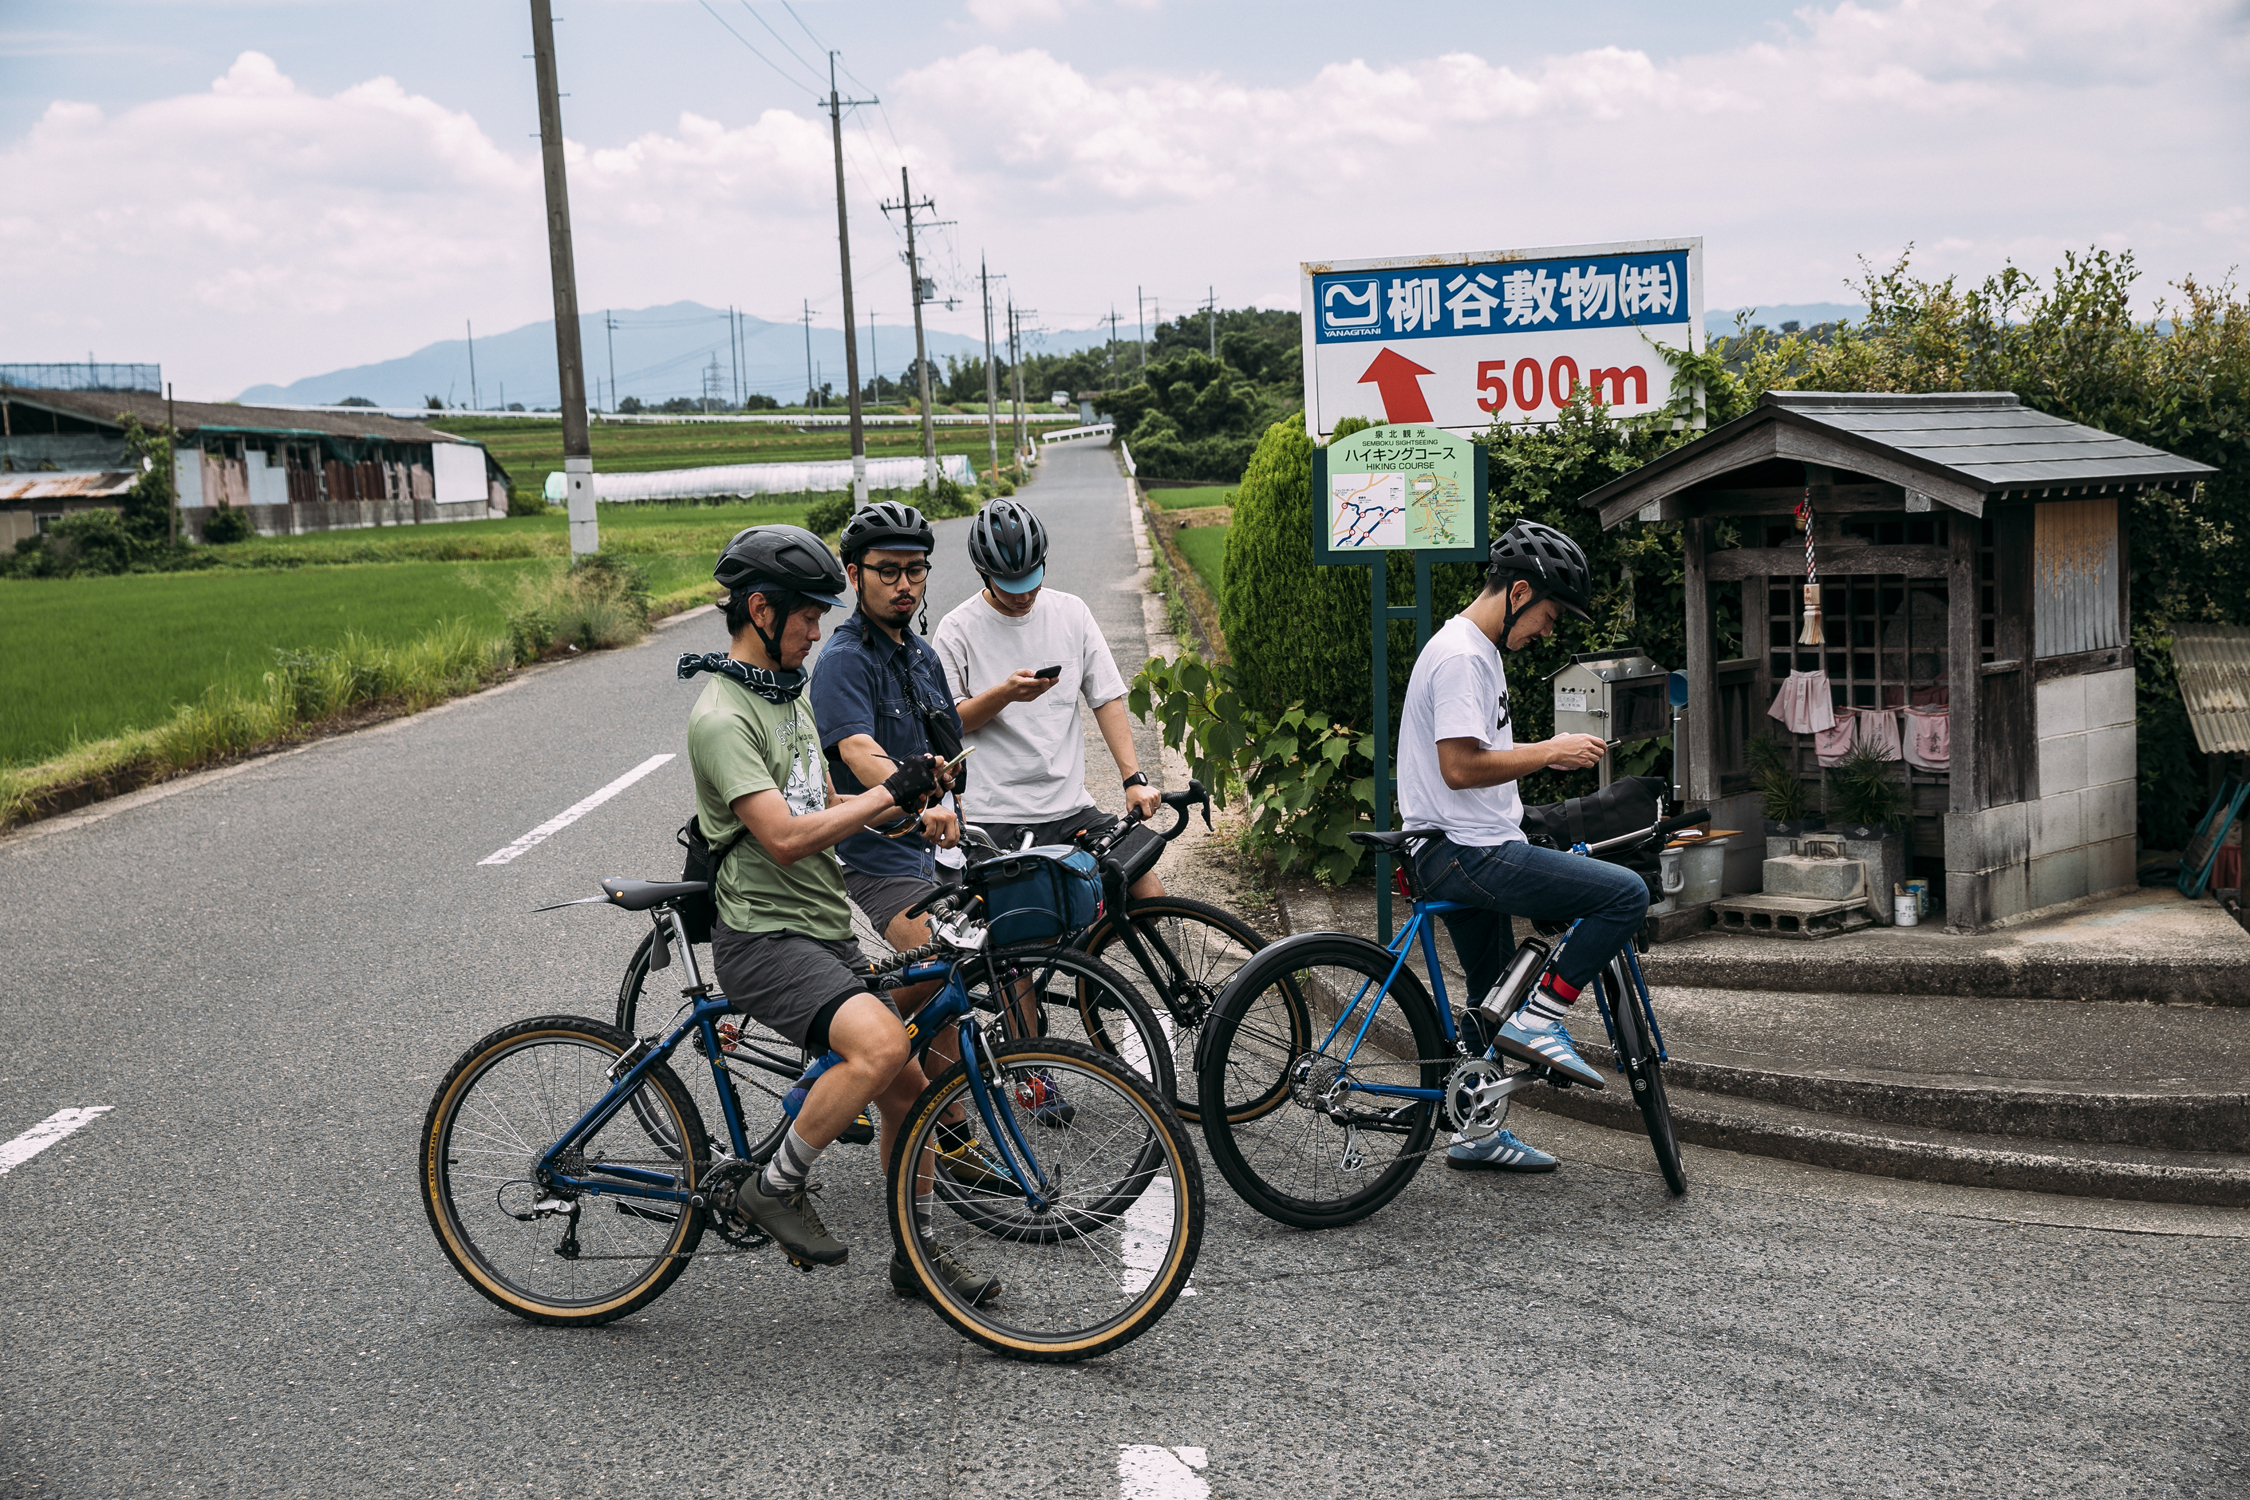 correre su bici da gravel in Giappone con Shimano GRX Limited